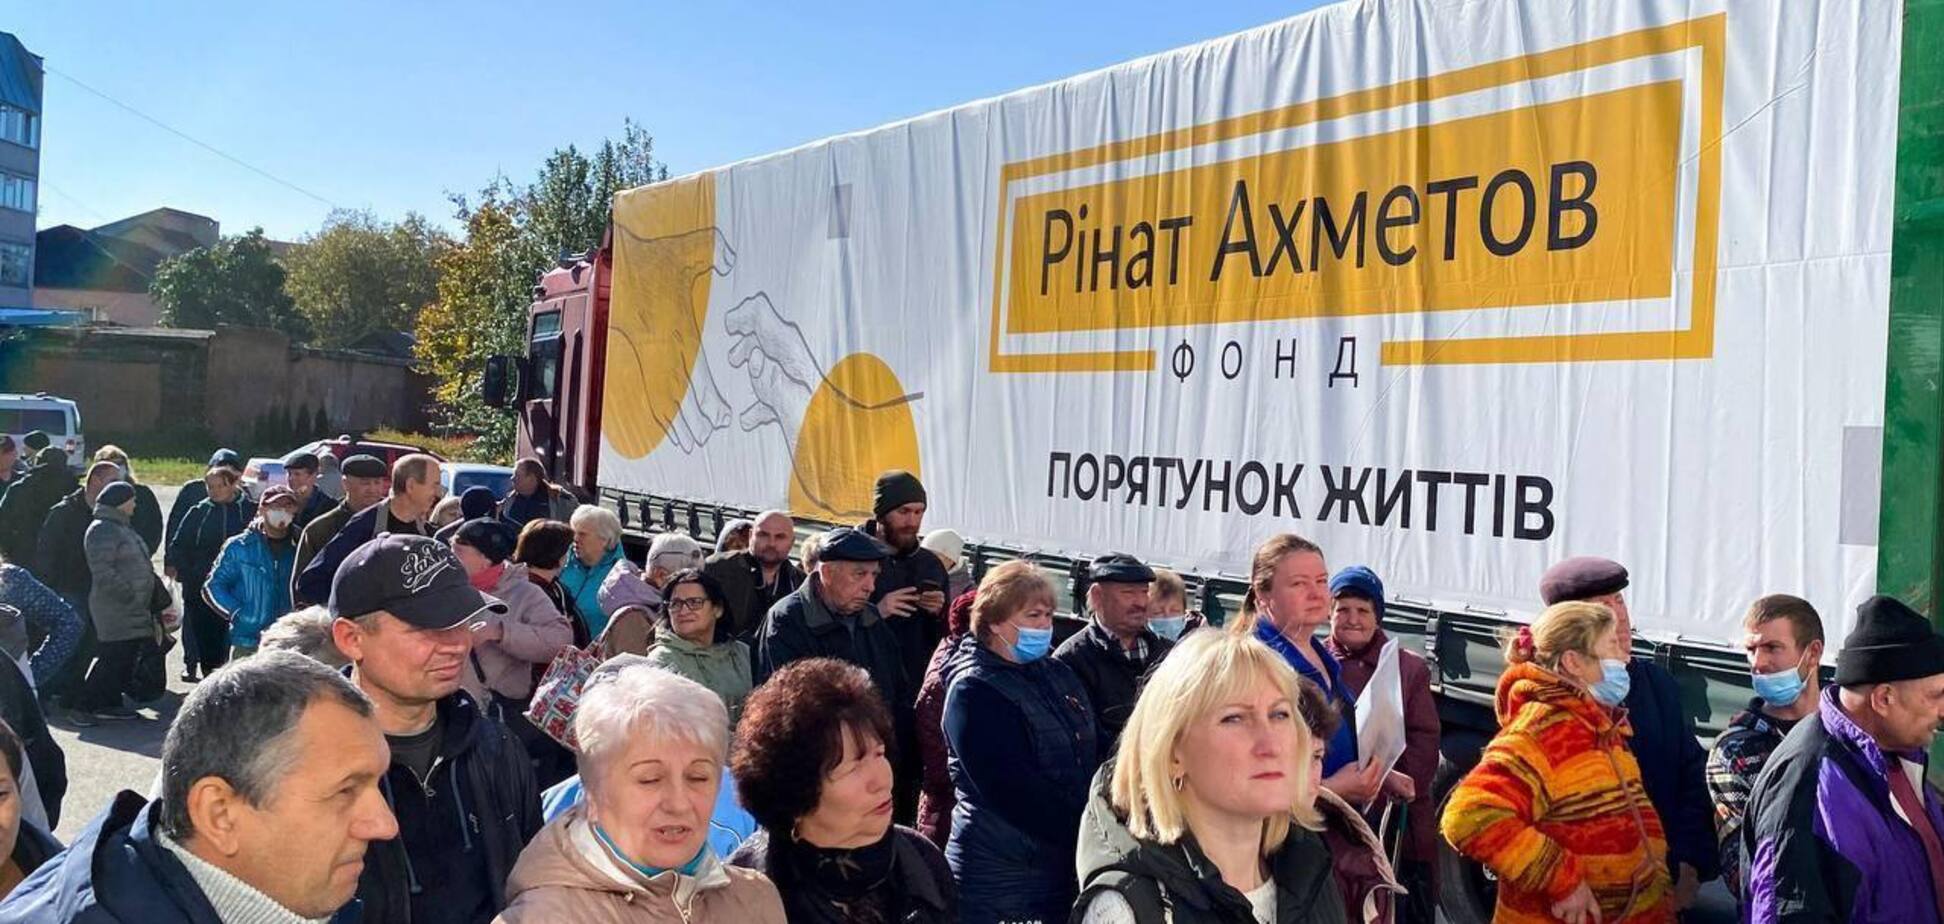 Жители Ахтырки получили крупную партию гуманитарной помощи от Фонда Ахметова